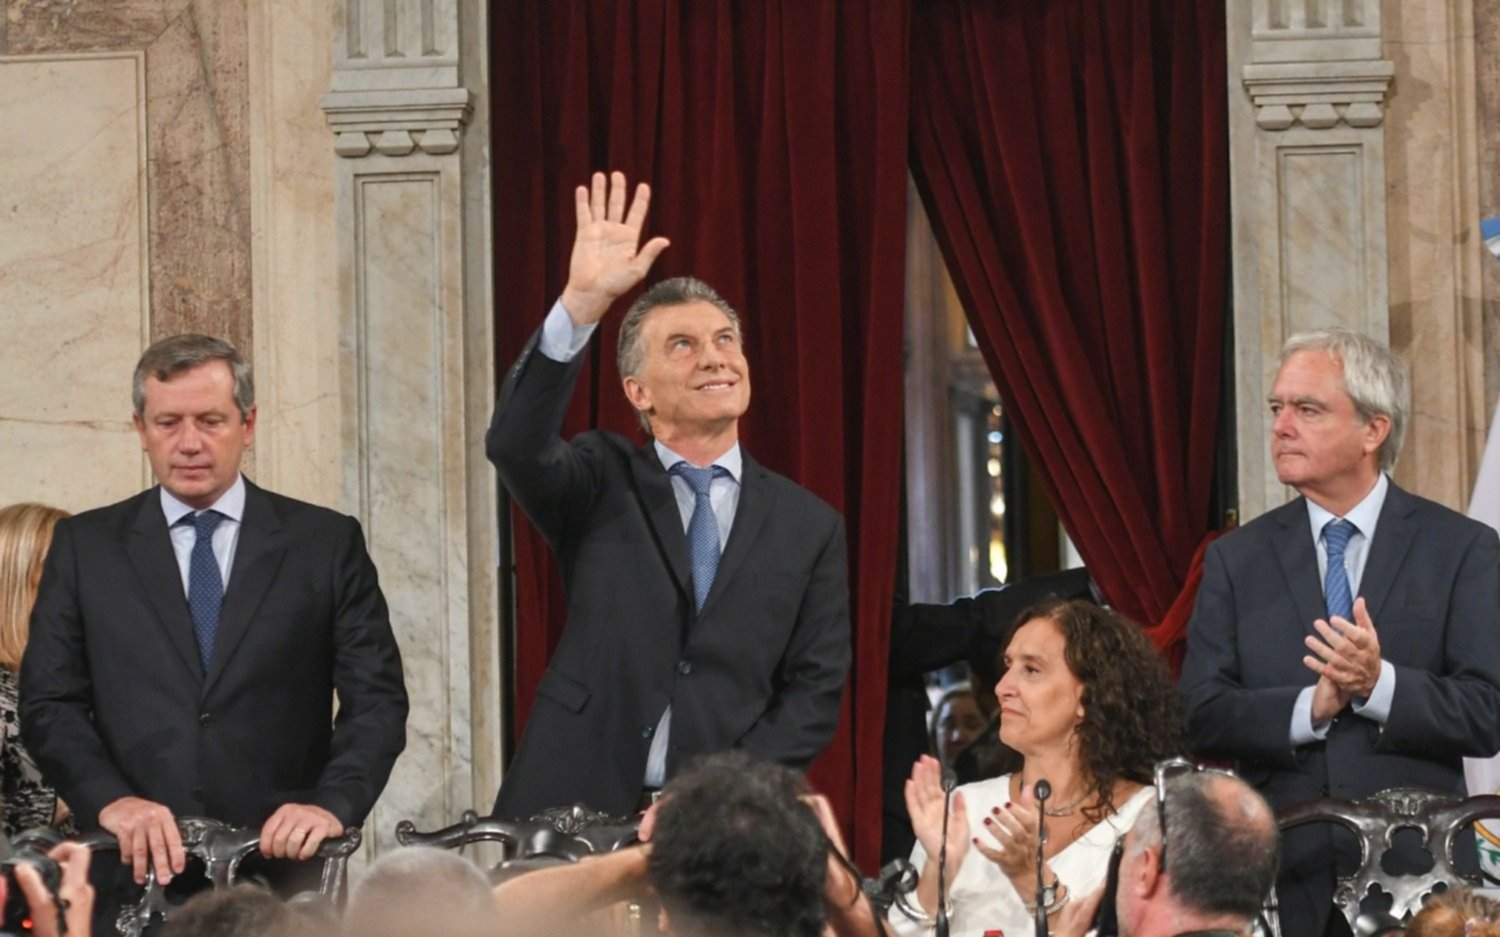 Las frases salientes del discurso de Macri en el Congreso